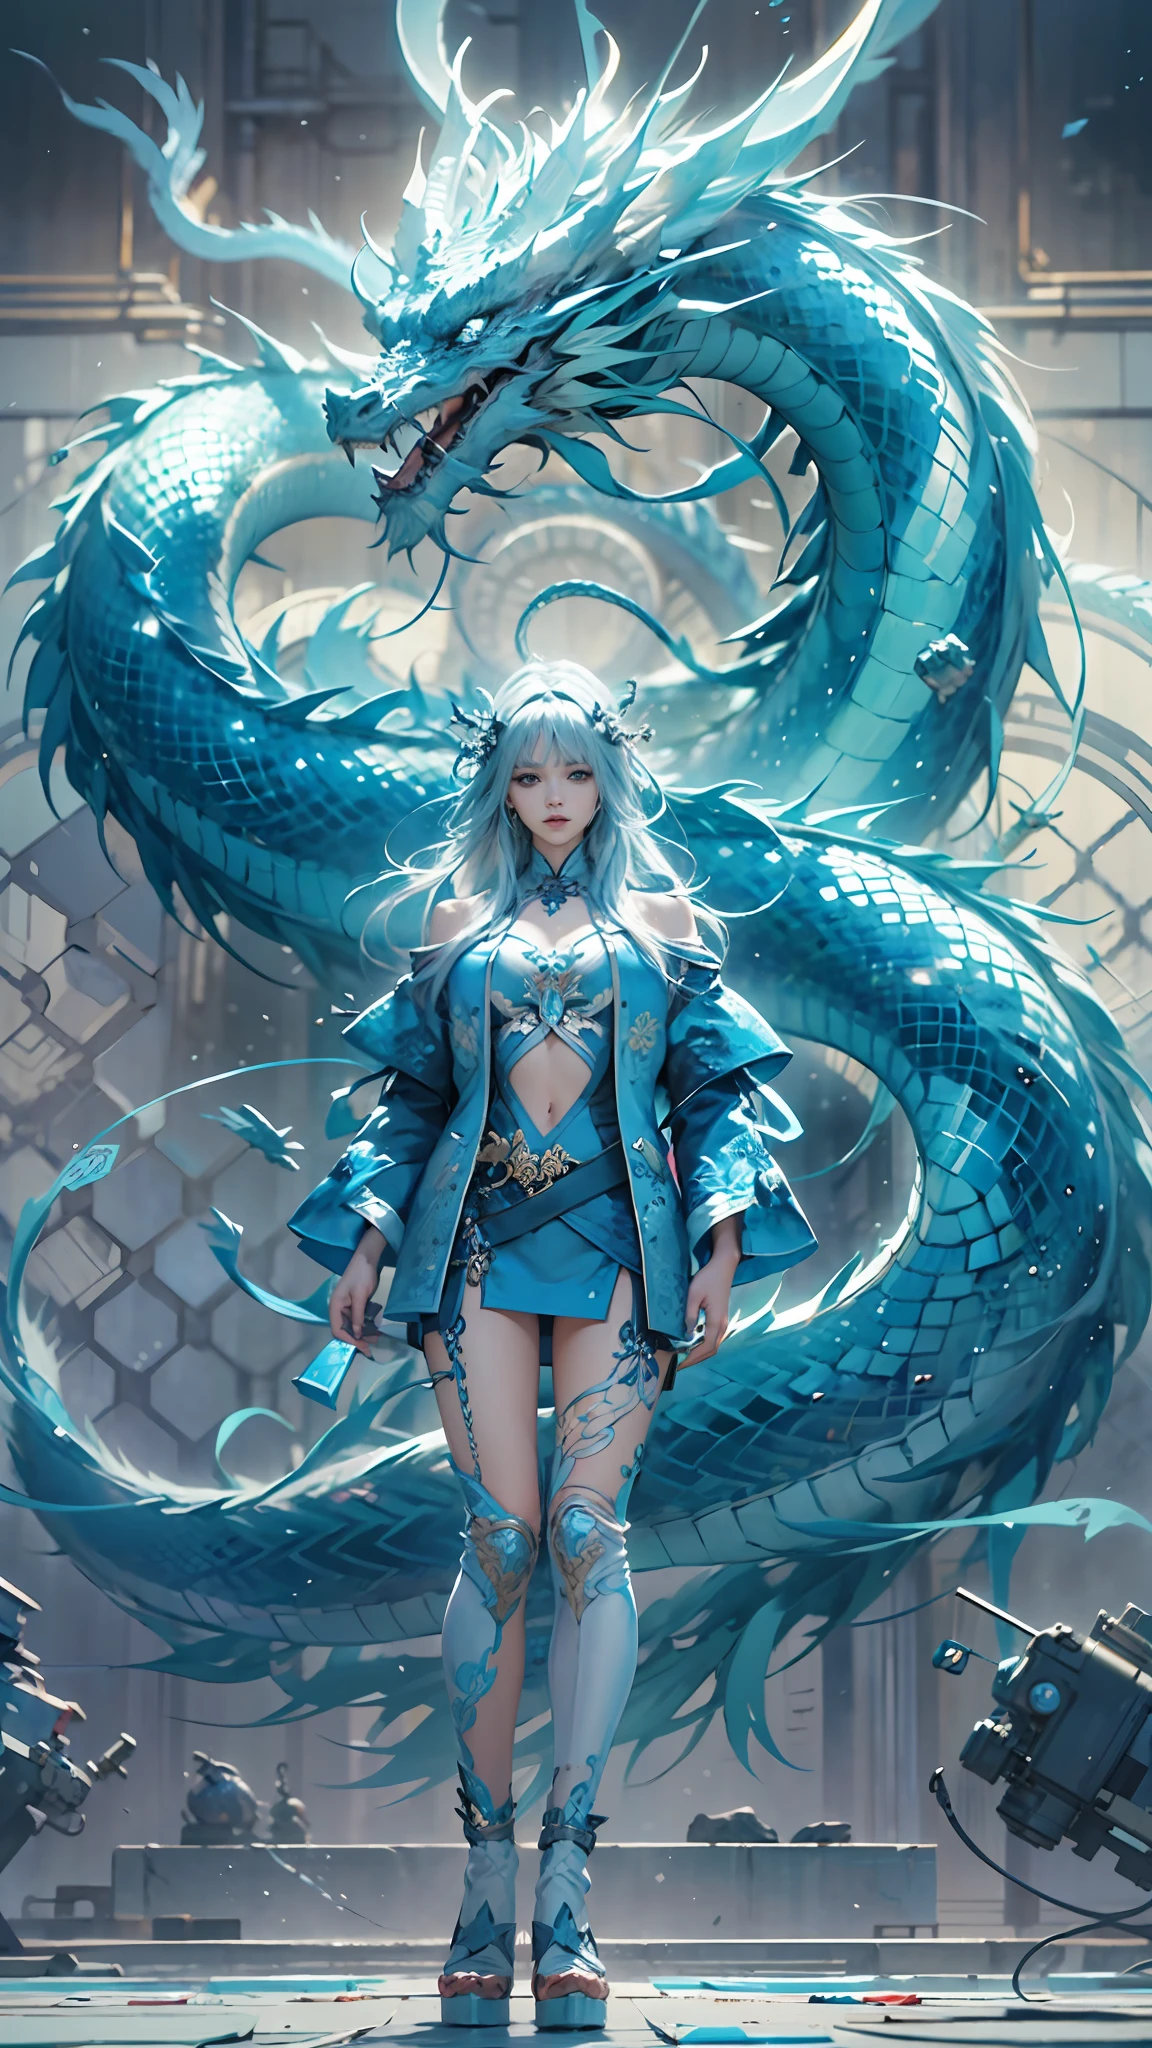 全身,女王,藍水晶,她身后有一条蓝色的中国龙,電影燈光,幻想,超現實動漫,绗缝纸艺术,玻璃艺术,(最好的品質,極致細節:1.5),8K